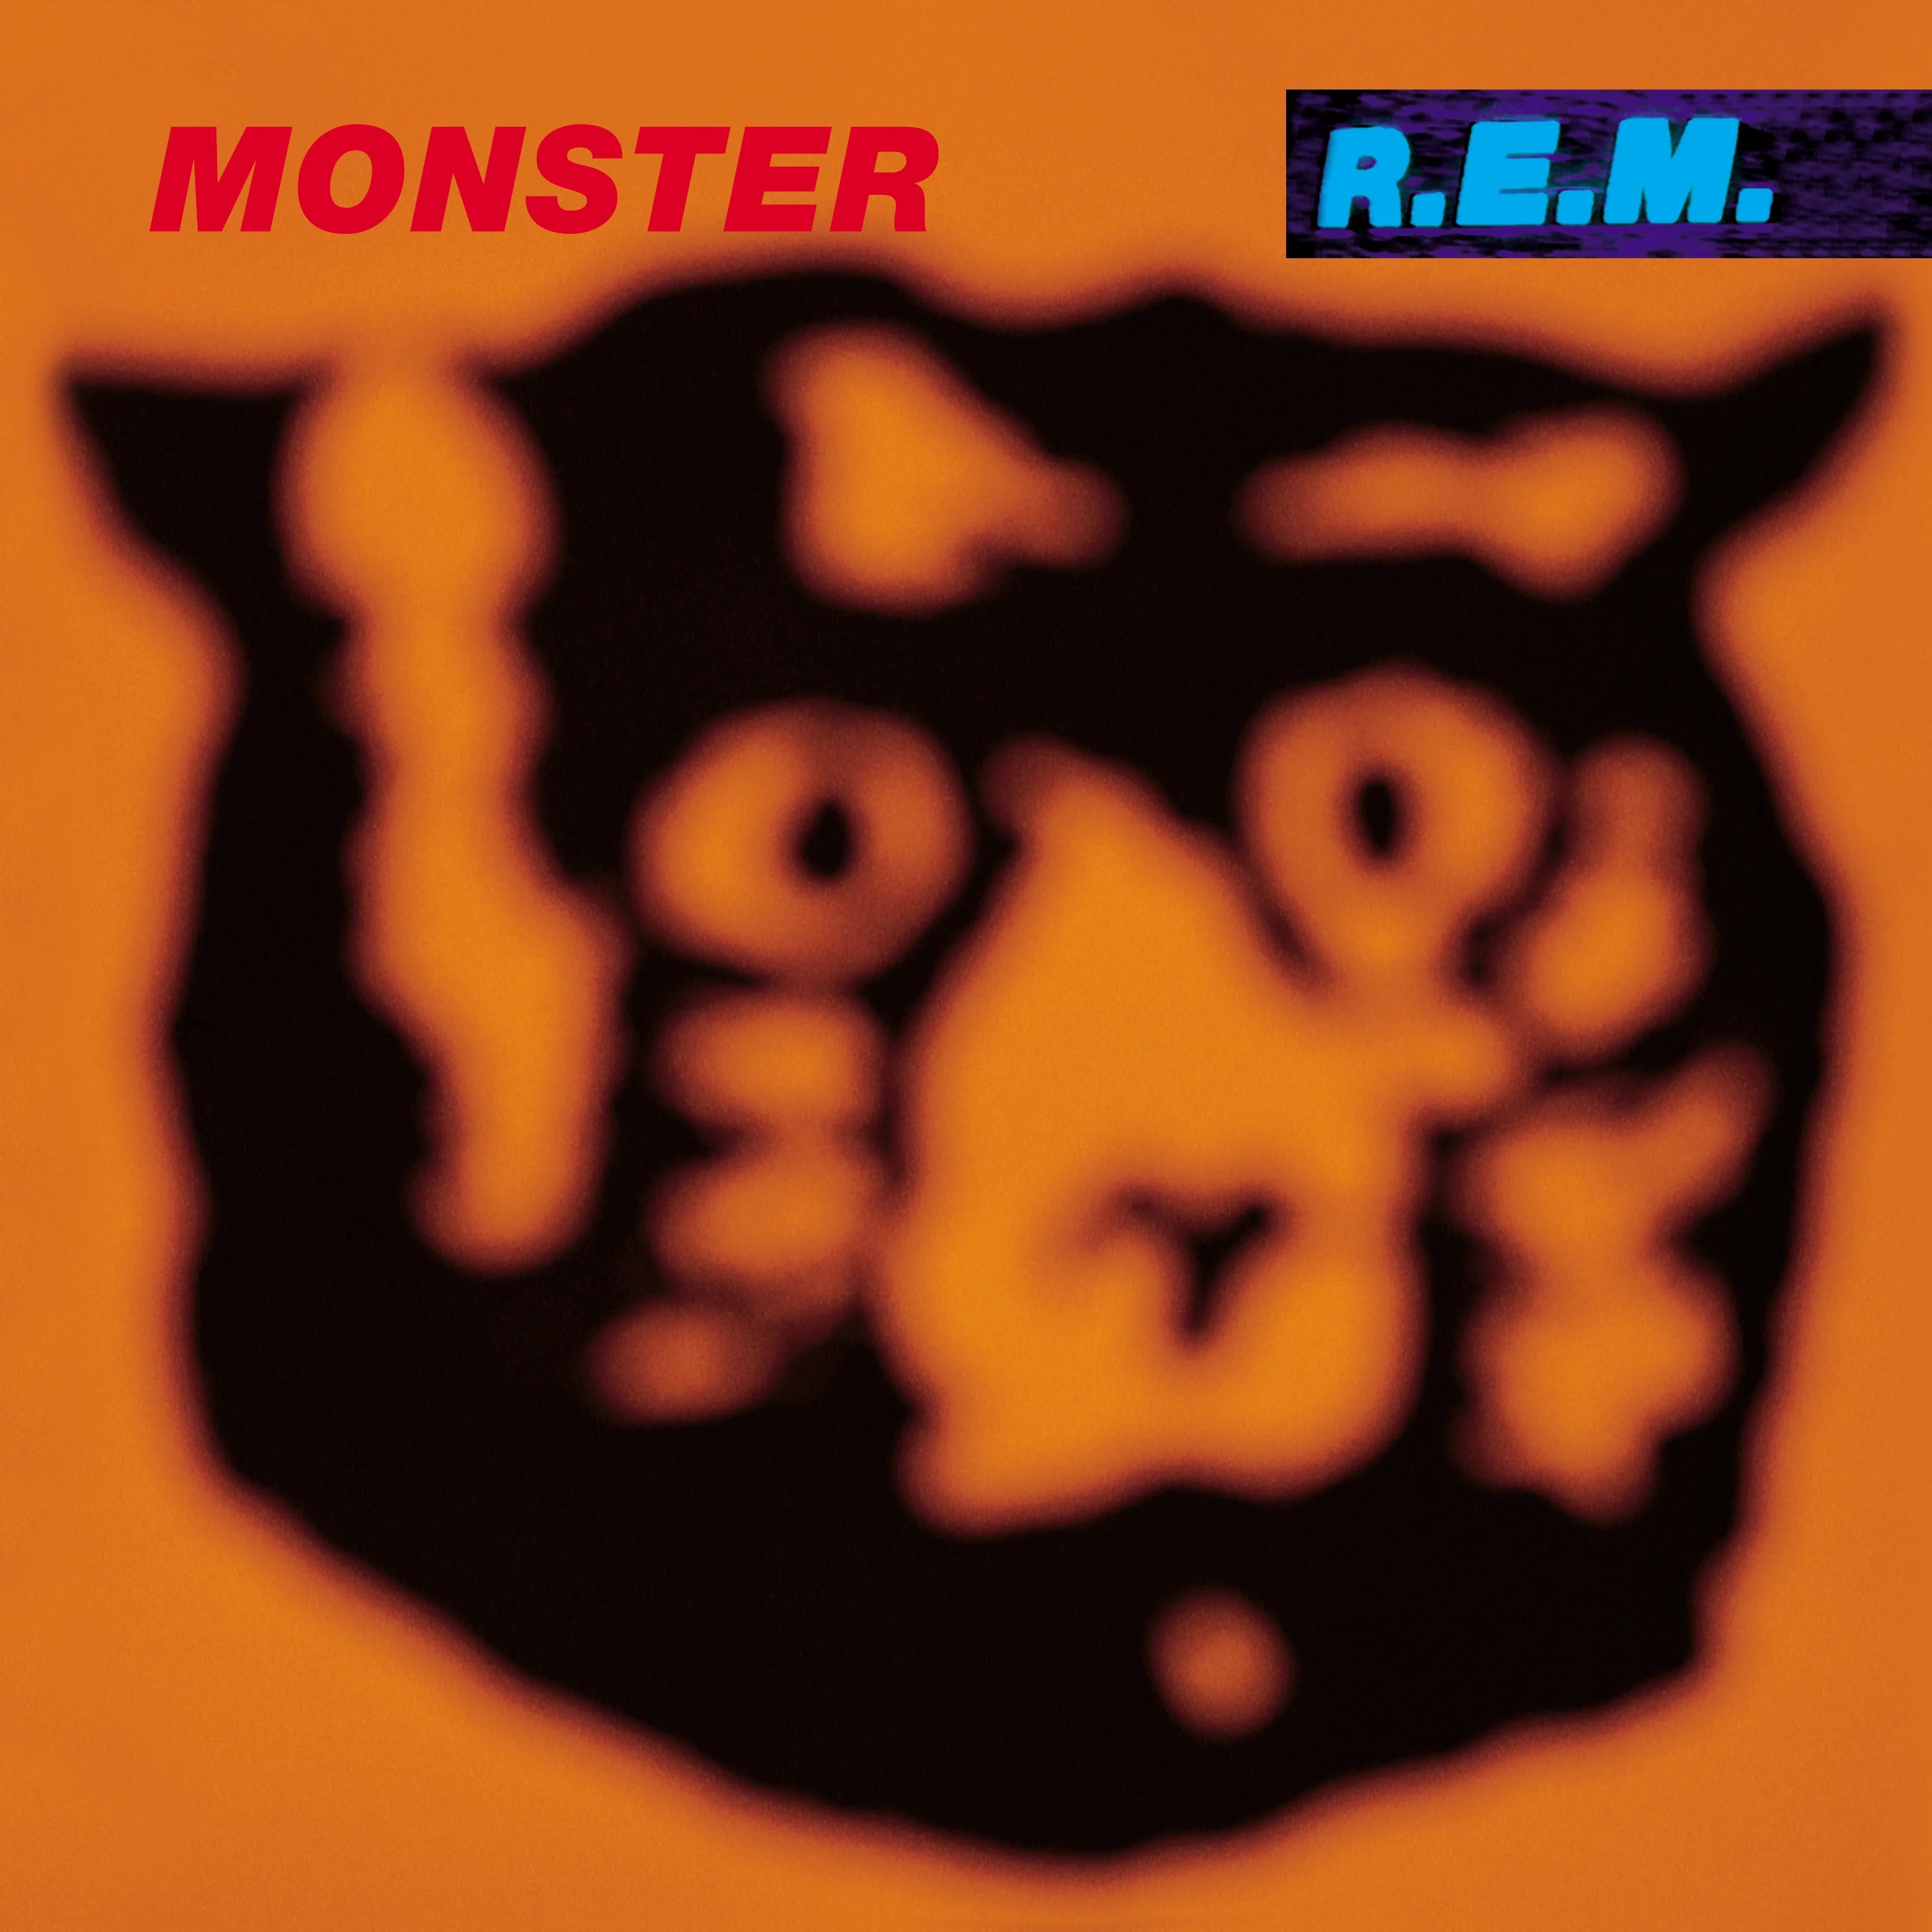 R.E.M. Monster cover artwork